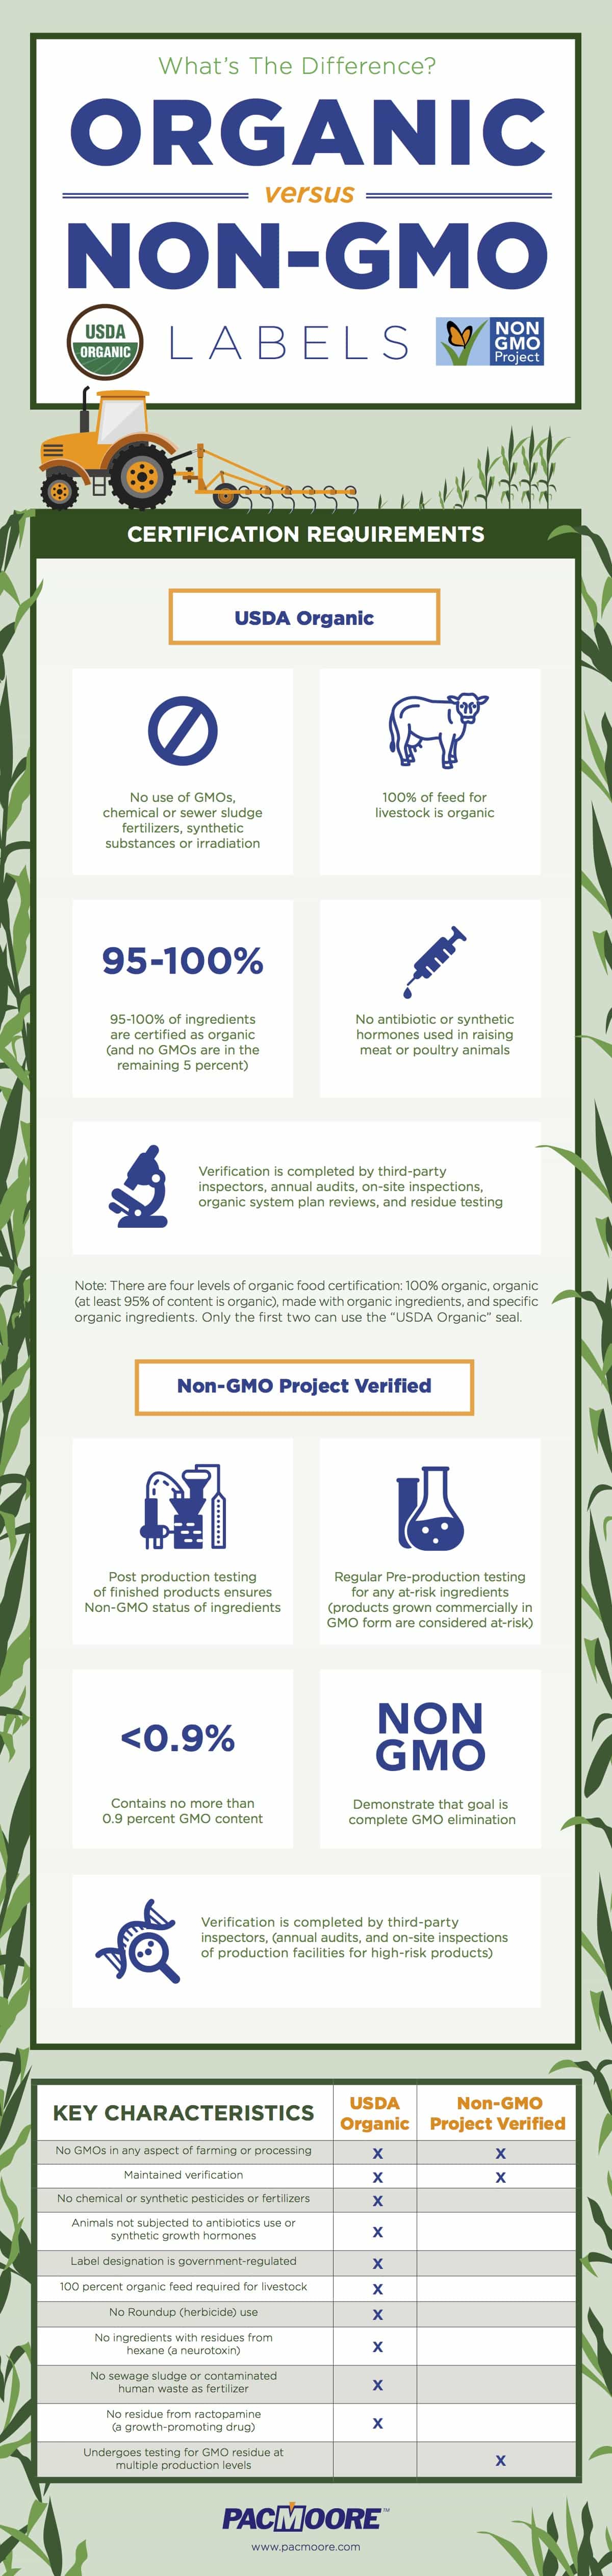 Organic vs. Non-GMO labels